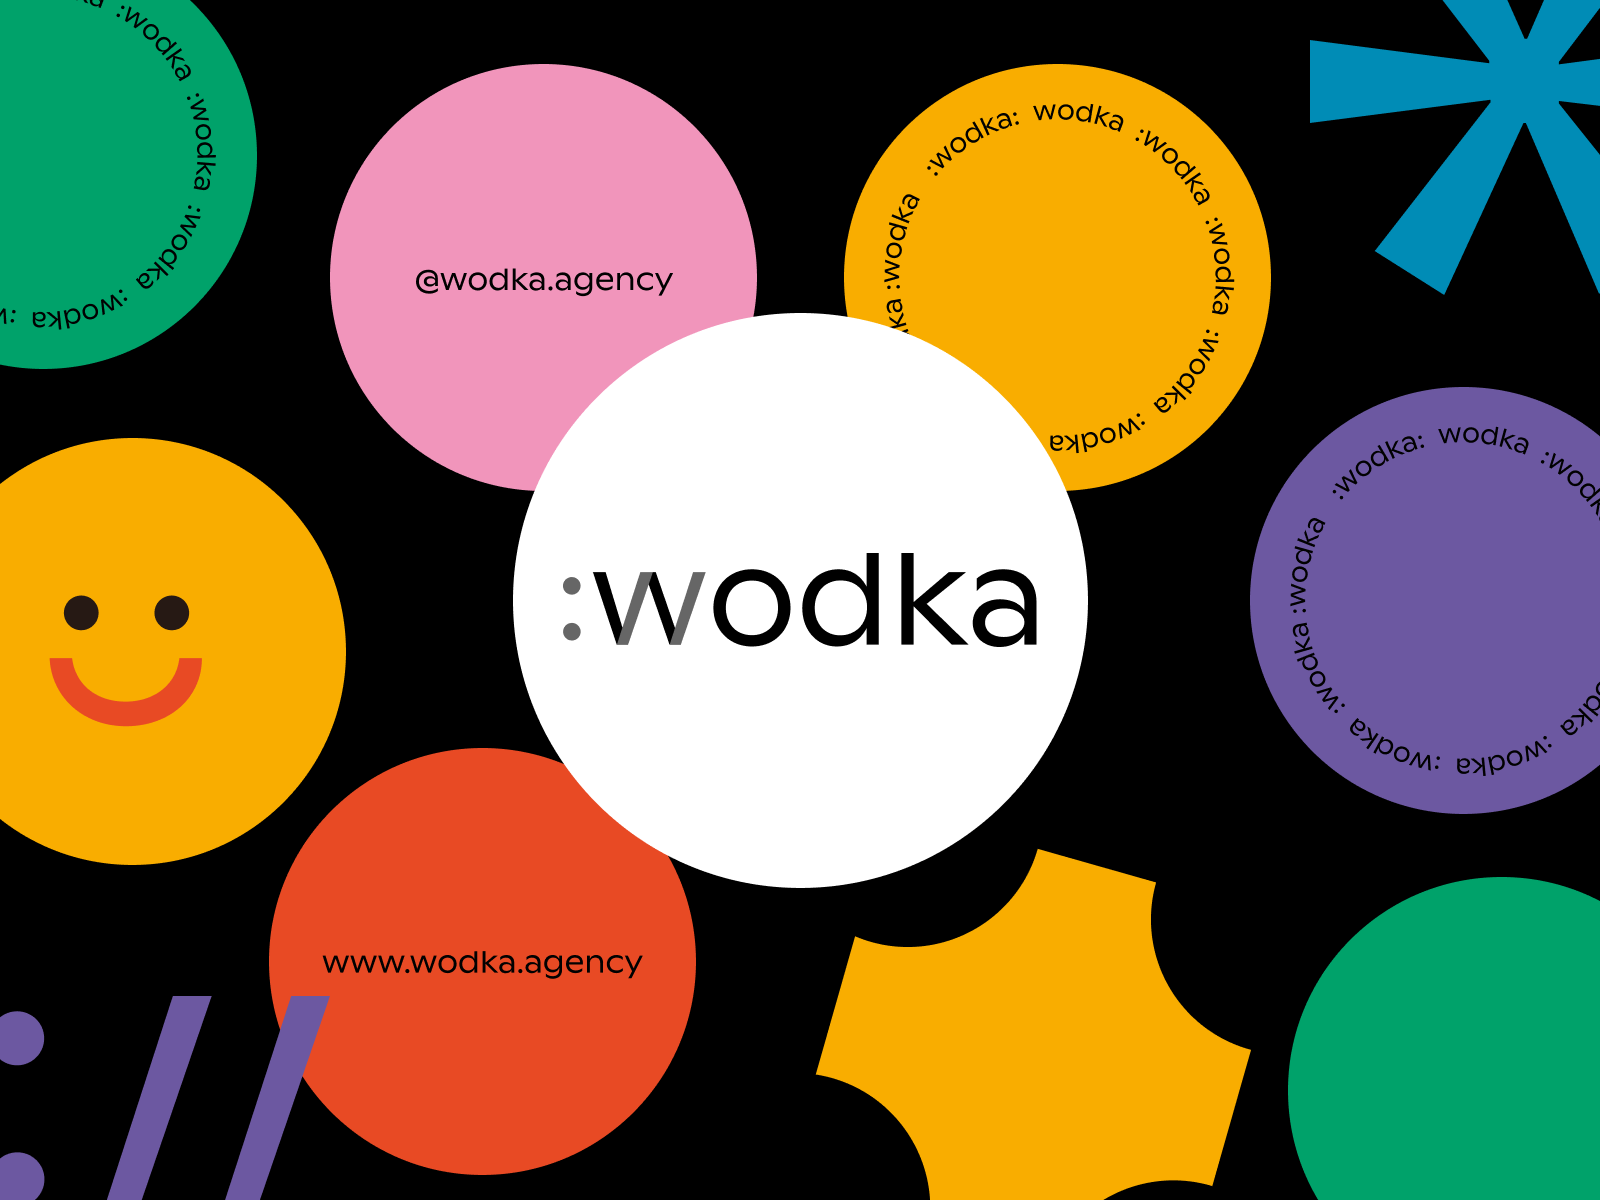 Wodka Agency